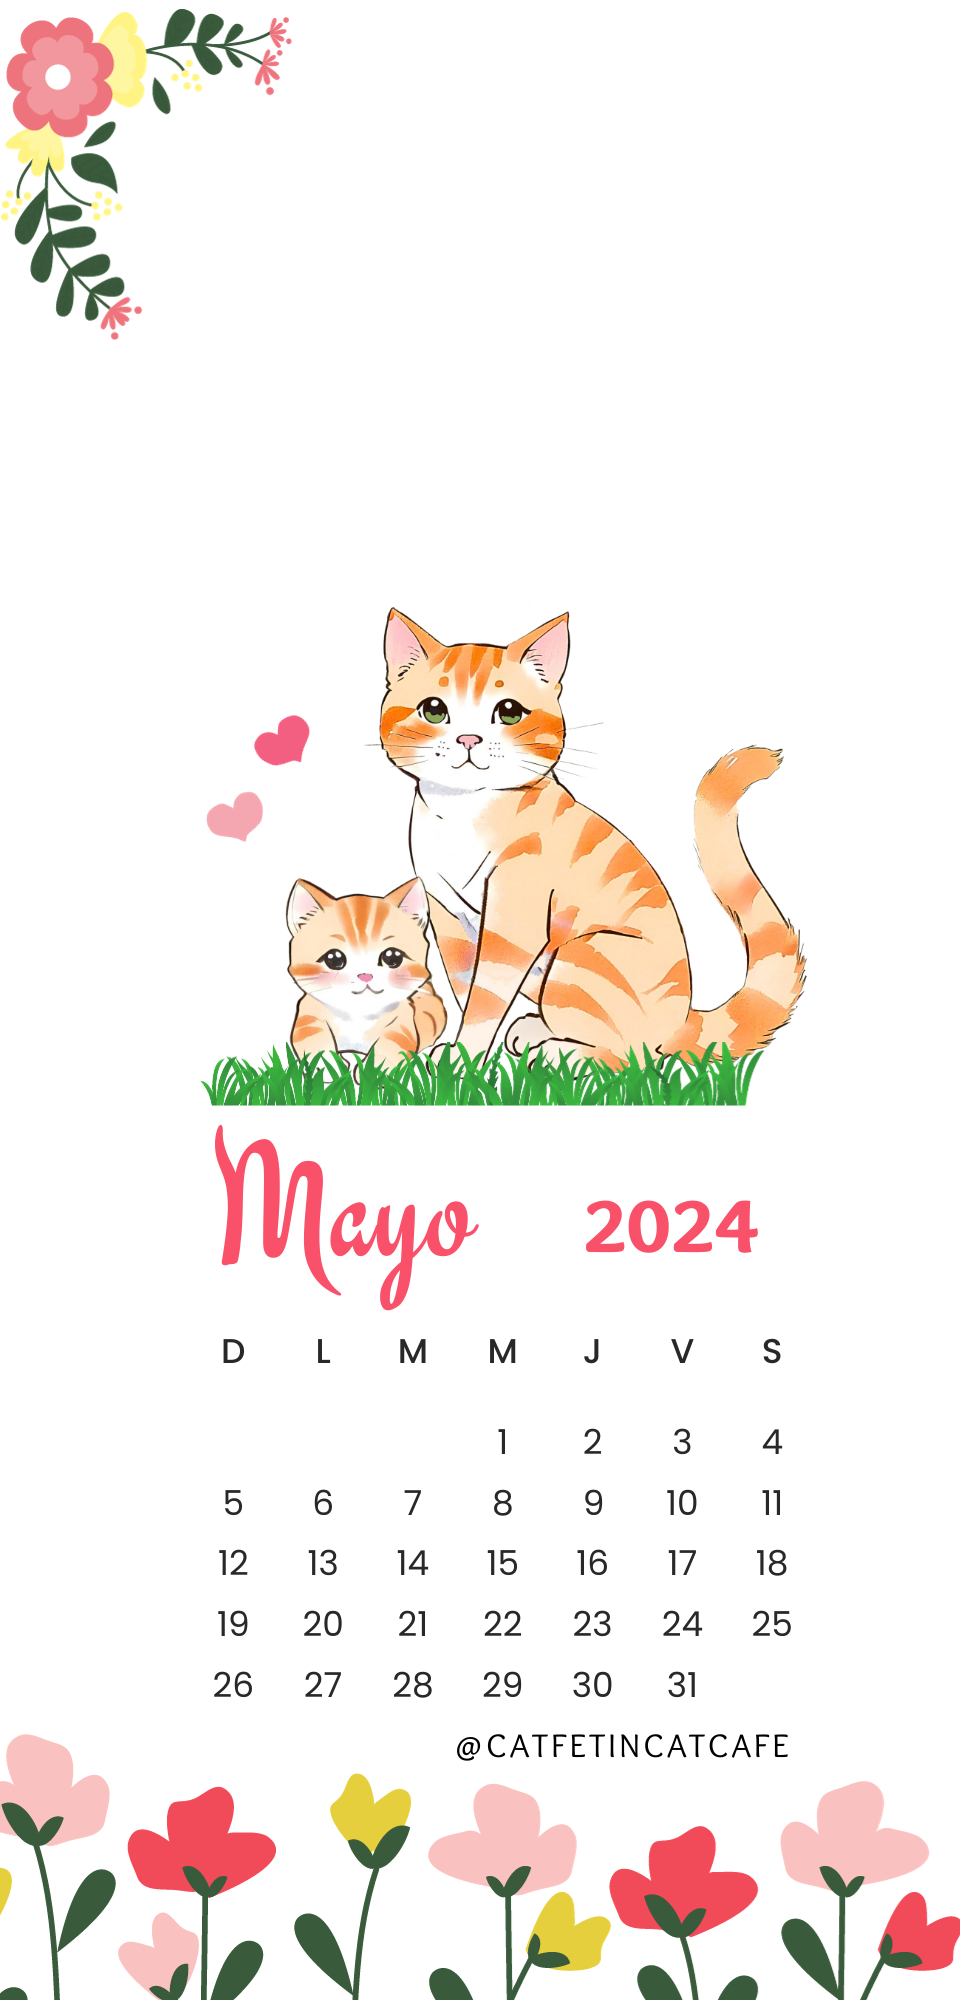 Mayo 2024.png